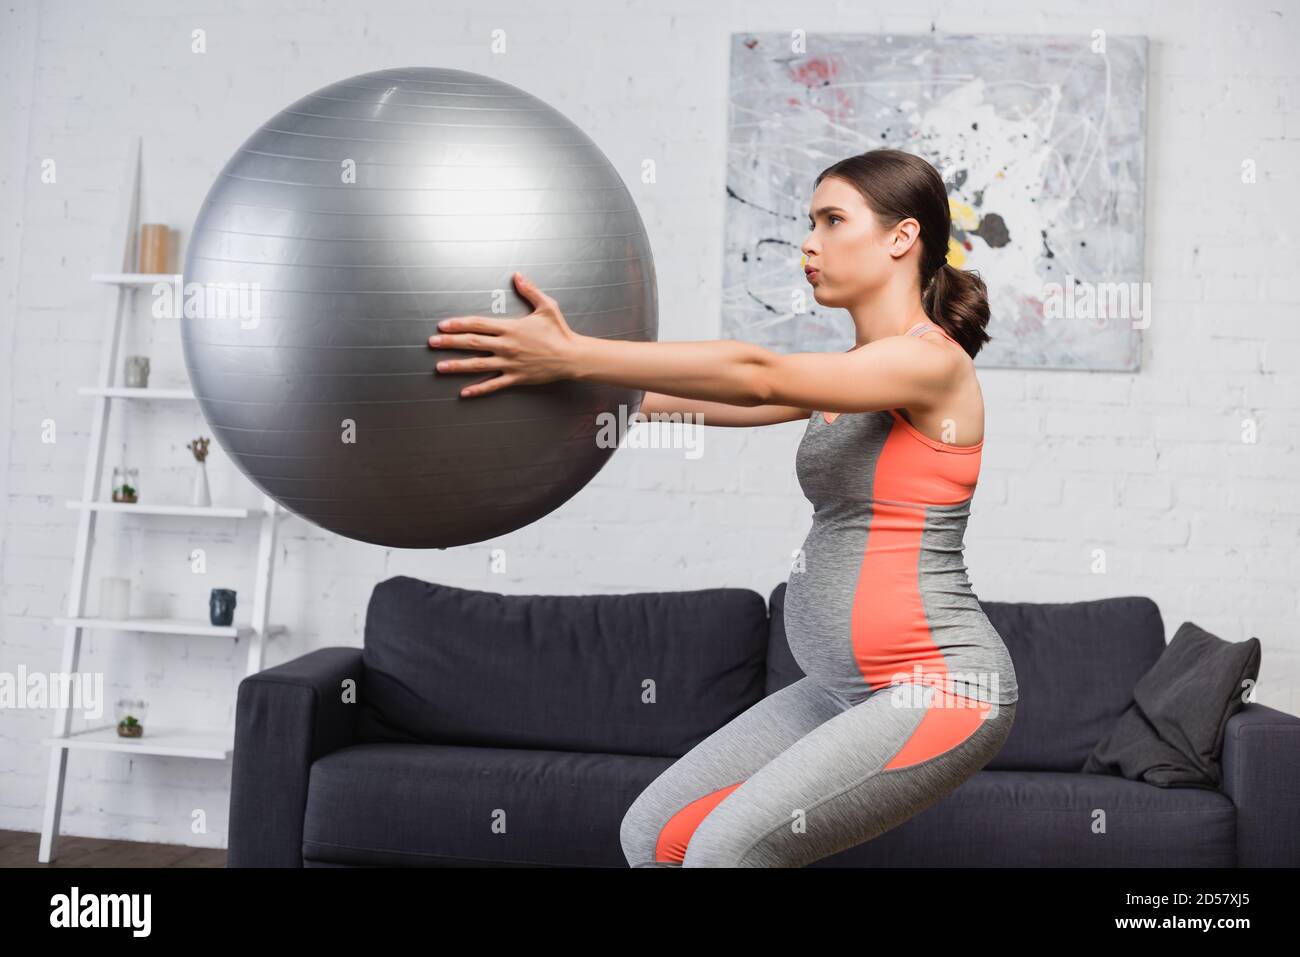 Brunette schwangere Frau Atmung während dabei hocken mit Fitness-Ball Im  Wohnzimmer Stockfotografie - Alamy